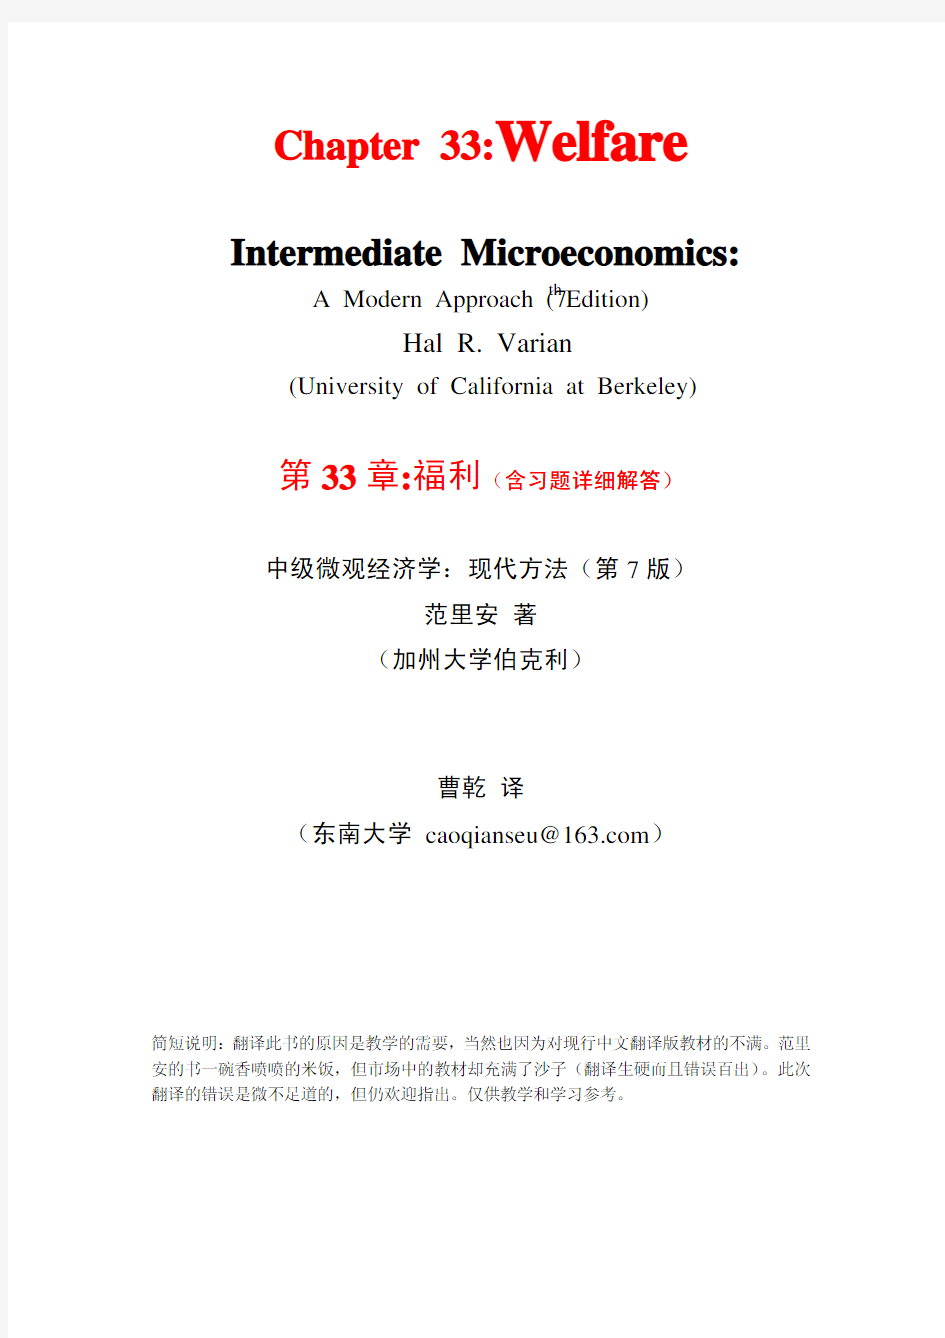 范里安-微观经济学现代观点(第7版)-33福利(含习题解答)